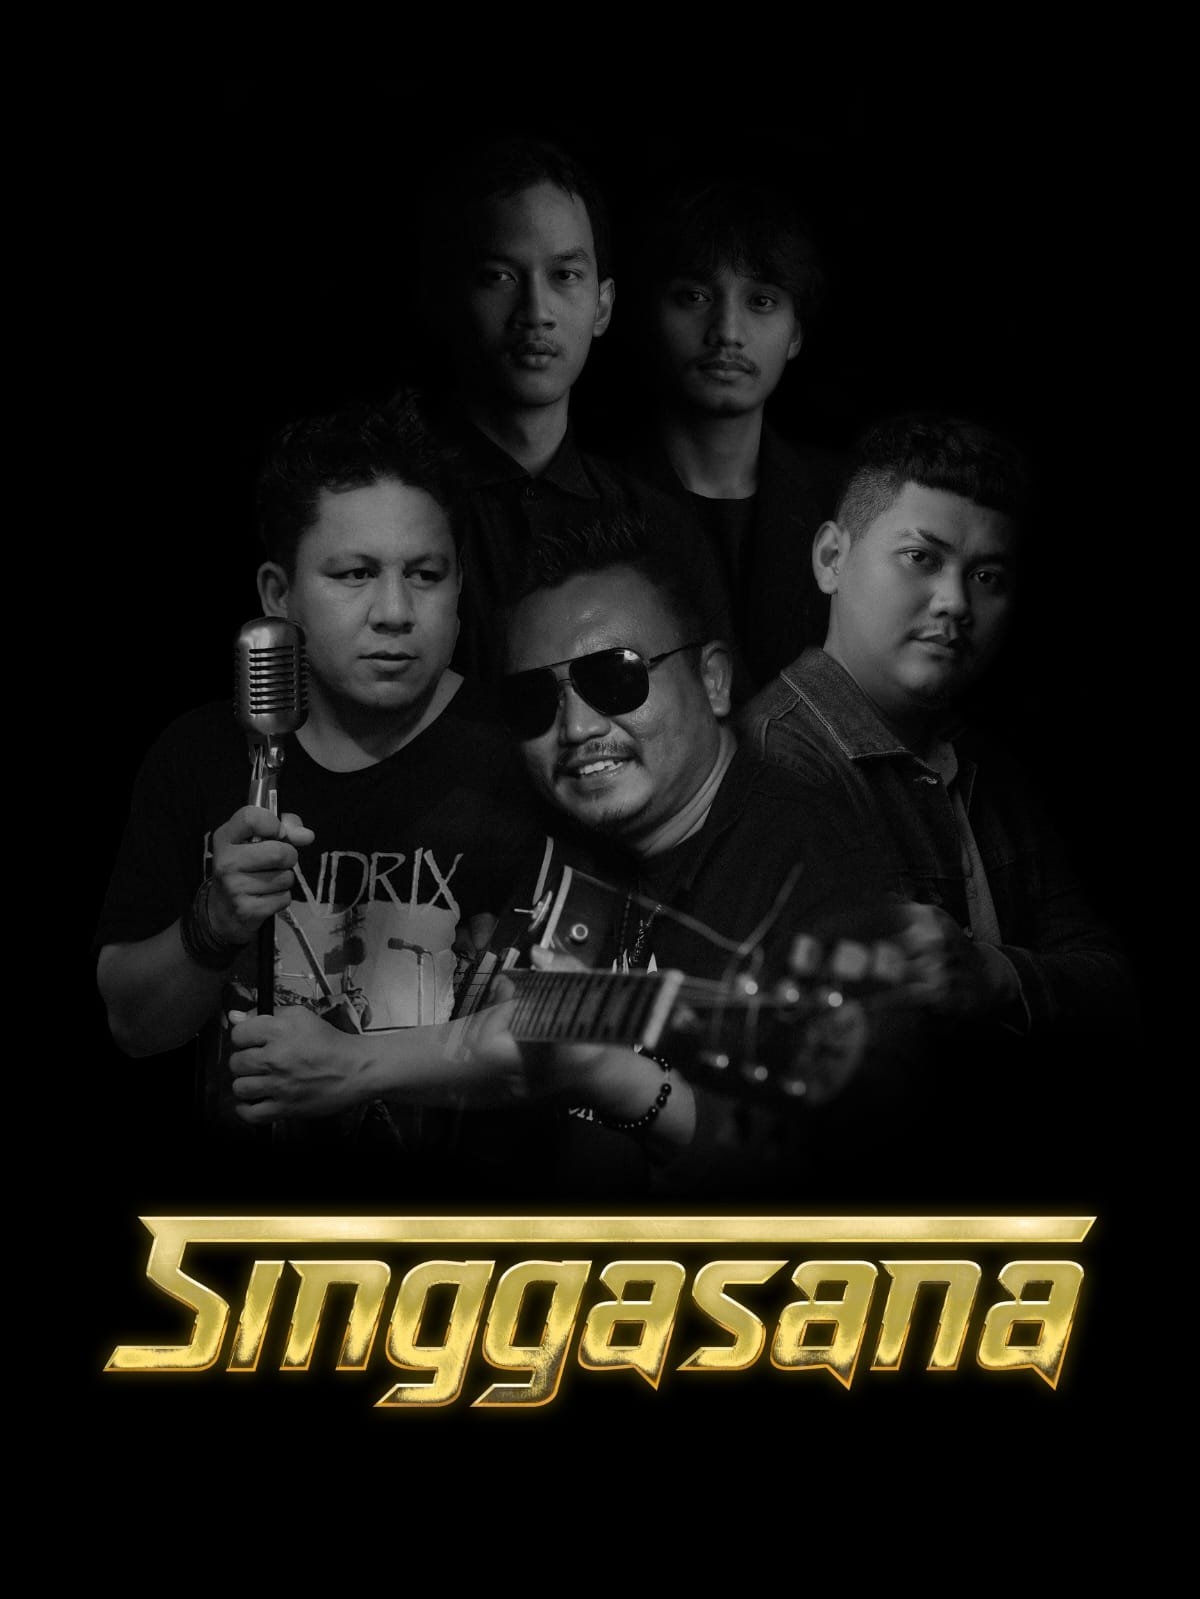 Band Singgasana Rilis Single "Kaulah"